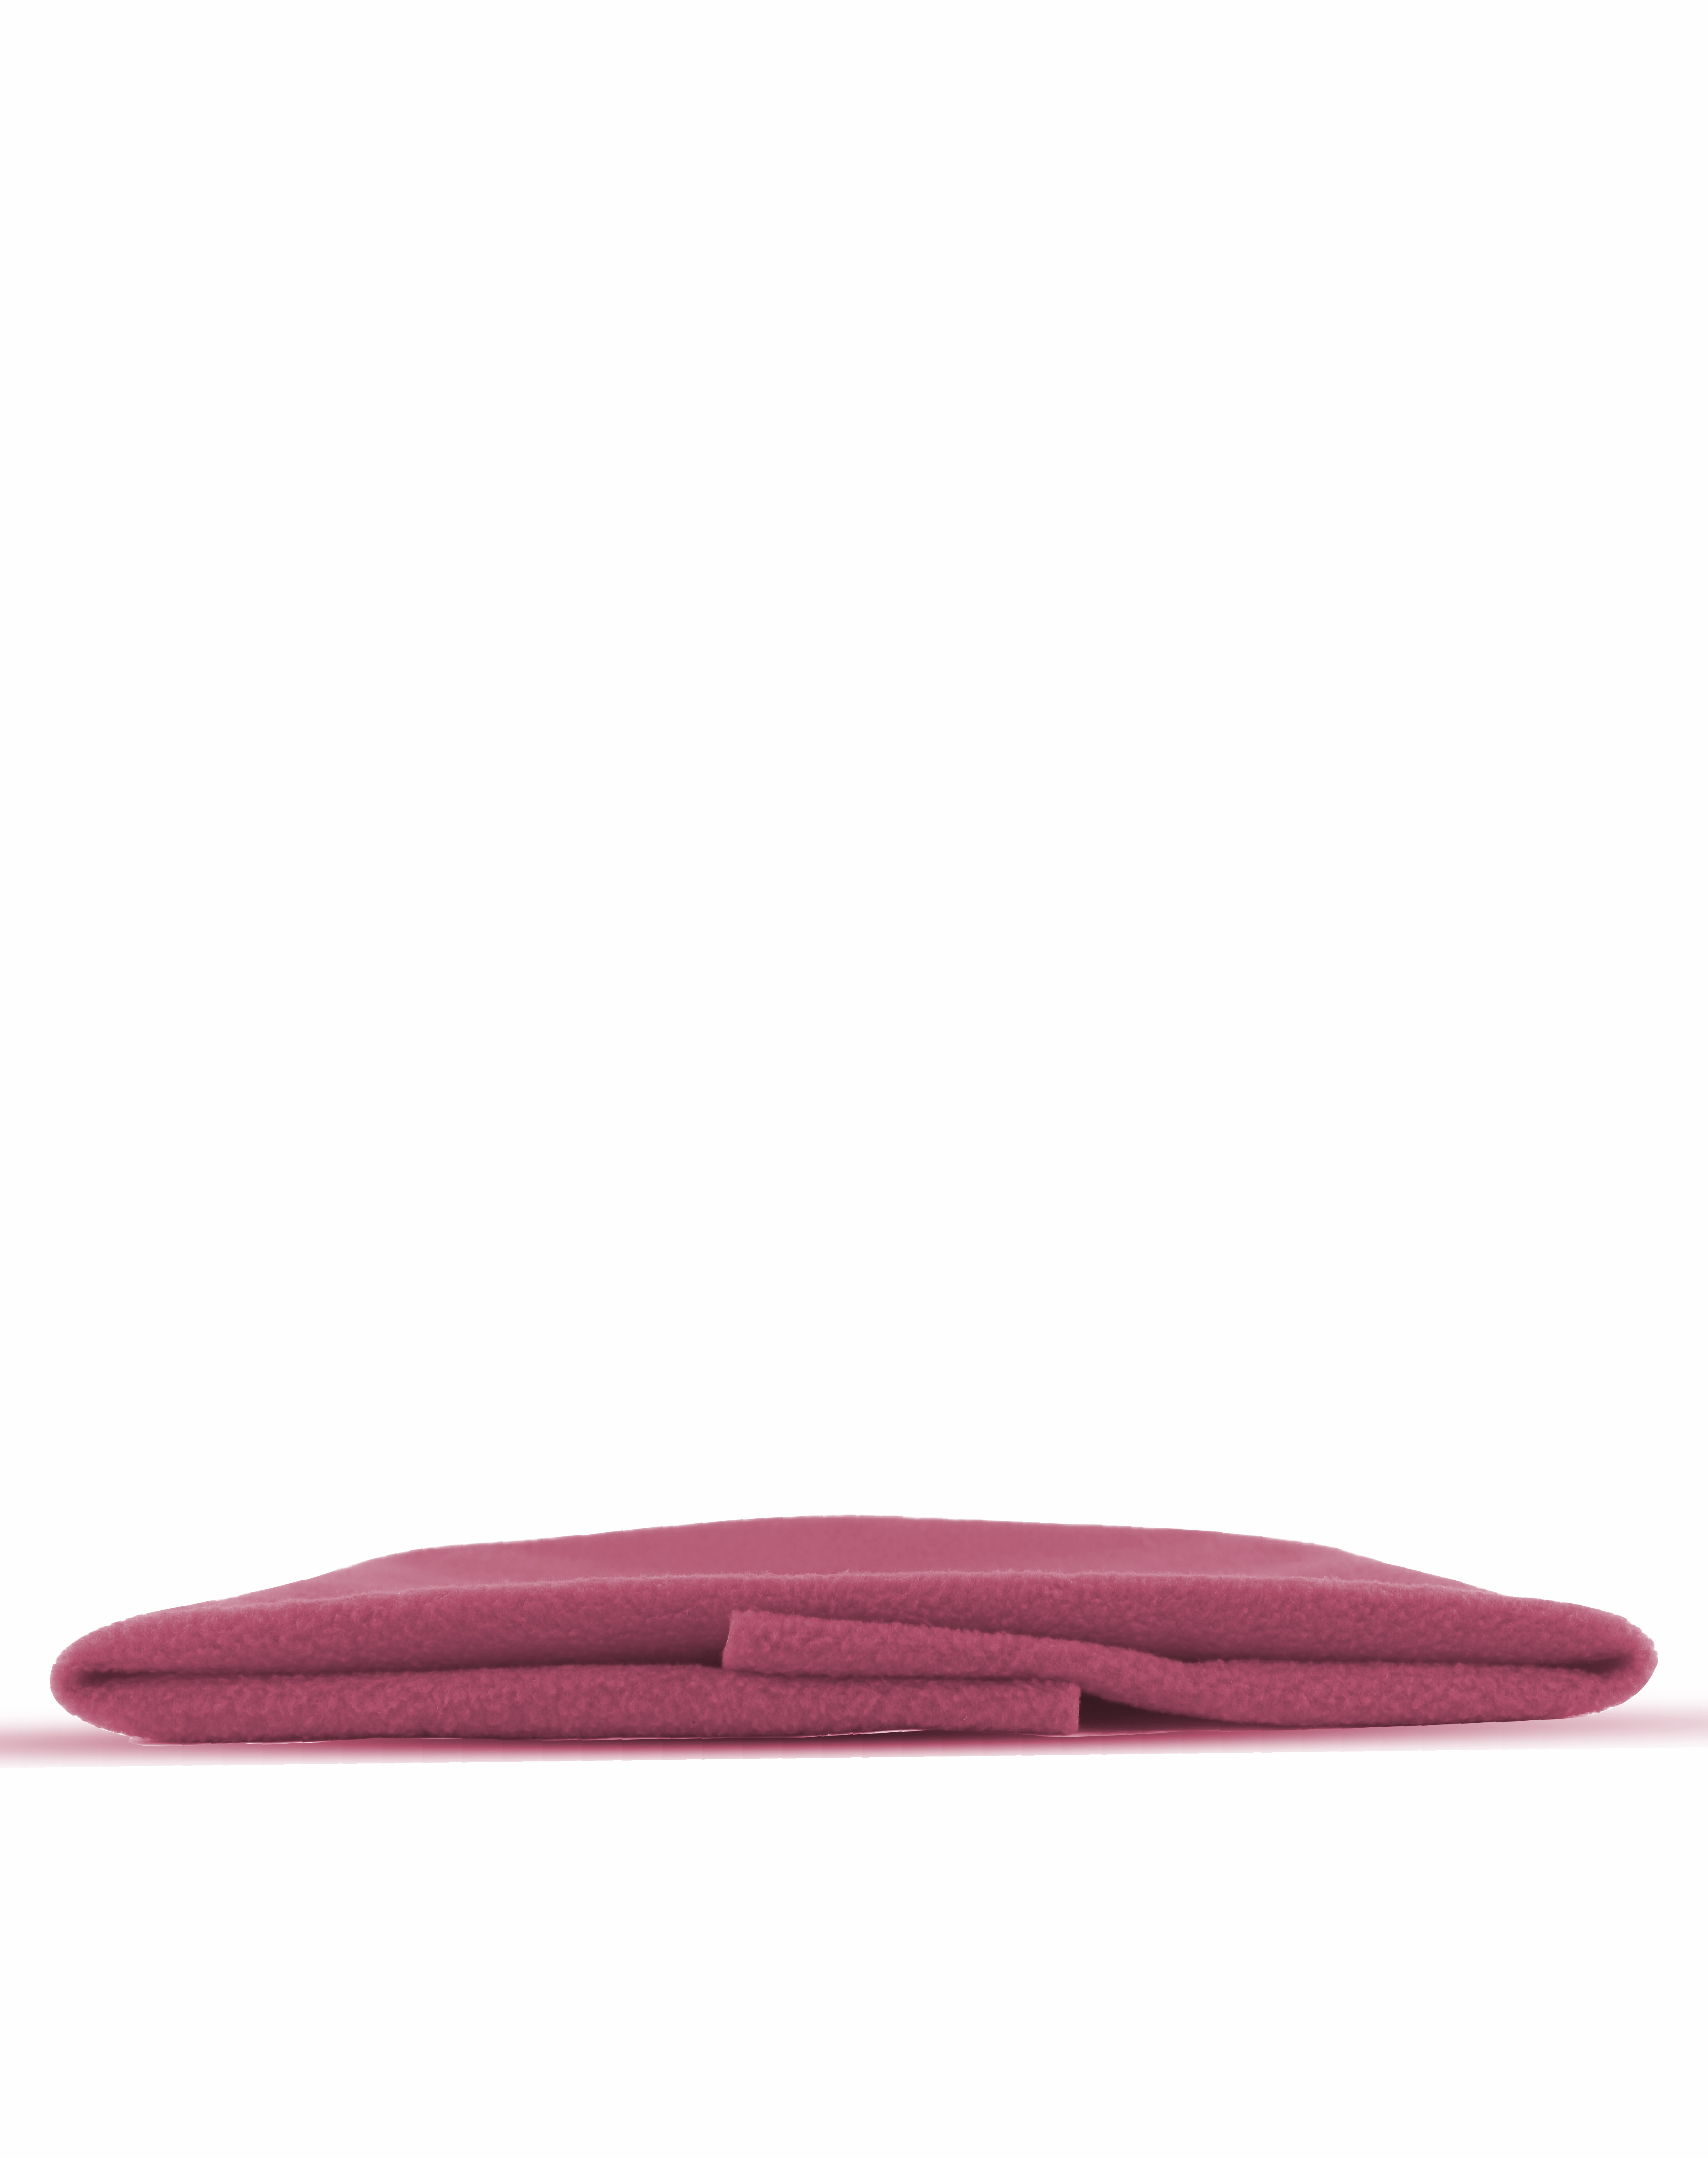 Steelbird Premium Care Baby Bed Sheet -InstaDry Extra Absorbent Completely Water-Proof & Reusable Mat/Bed Protector Sleeping Mat-Dark-Pink-S (50 Cm* 70 Cm) (Dark Pink)